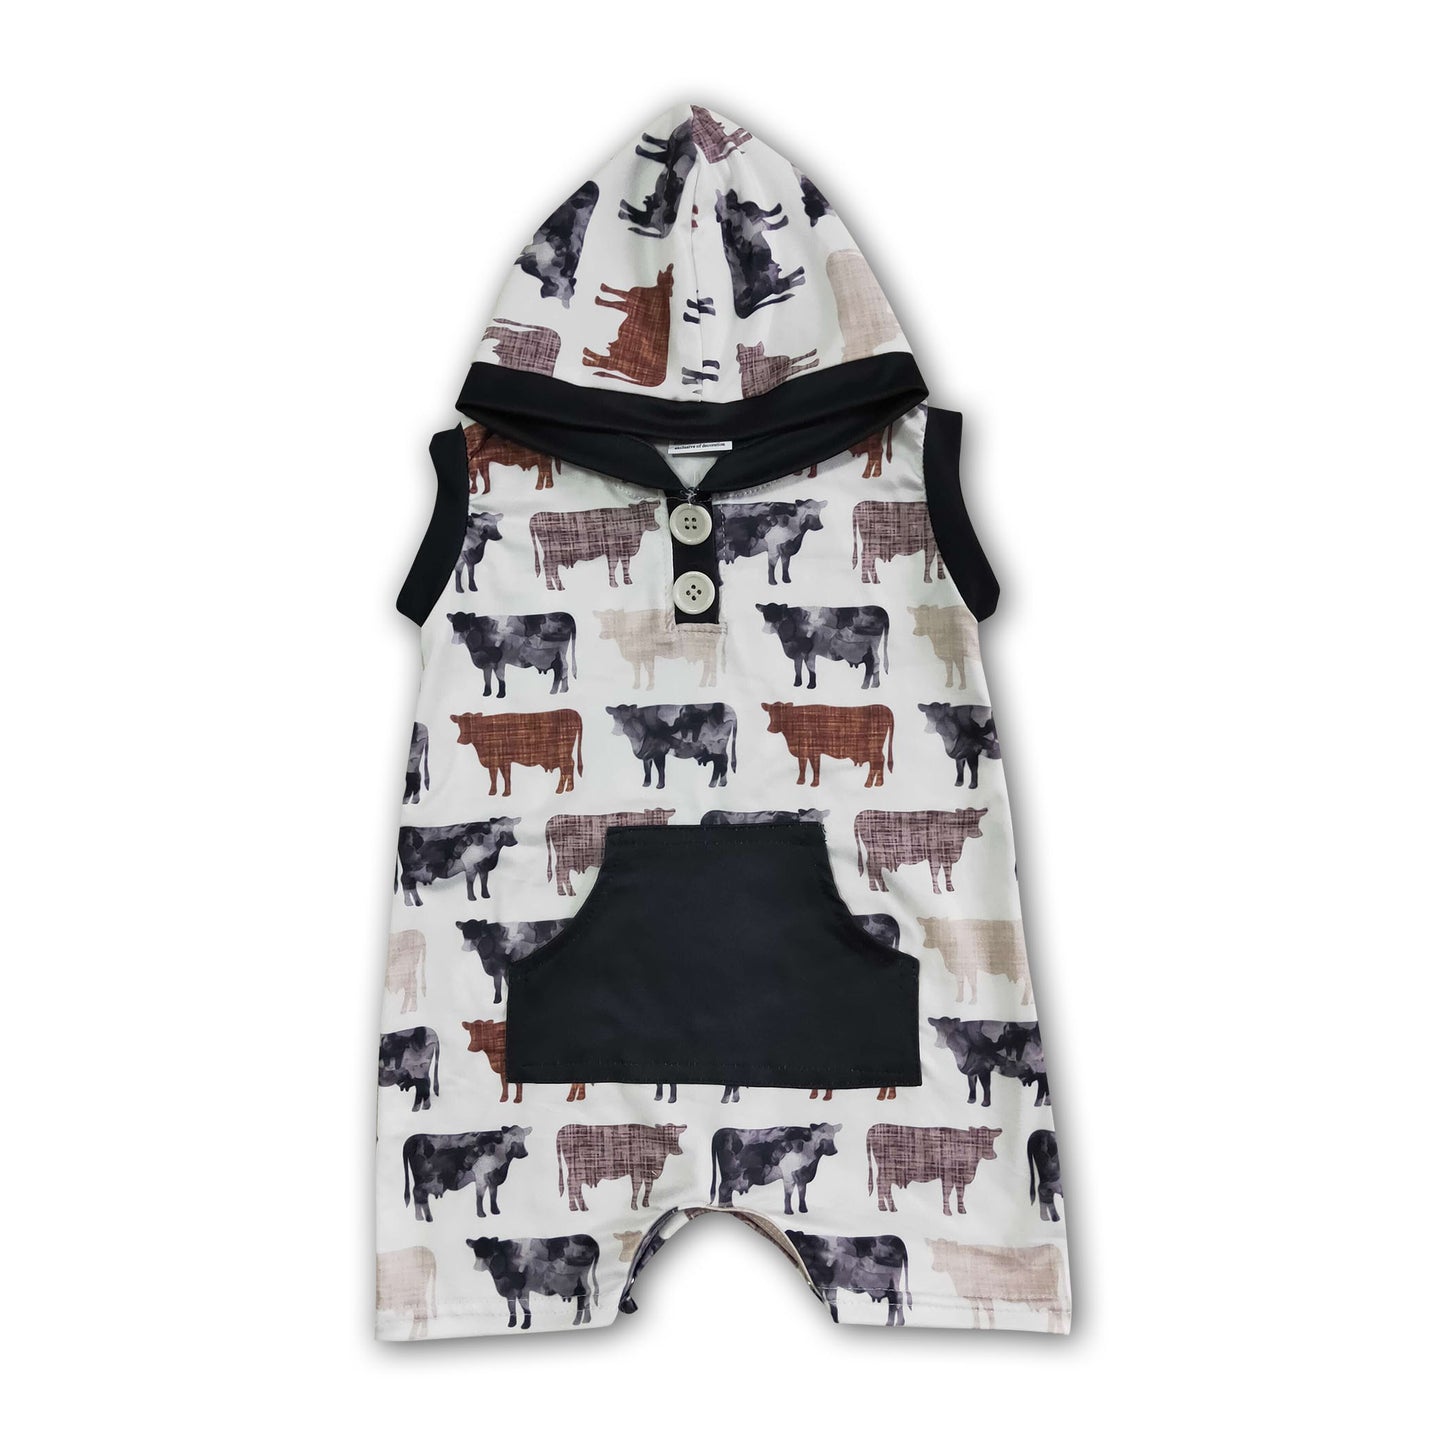 Cow print baby boy hoodie rompers